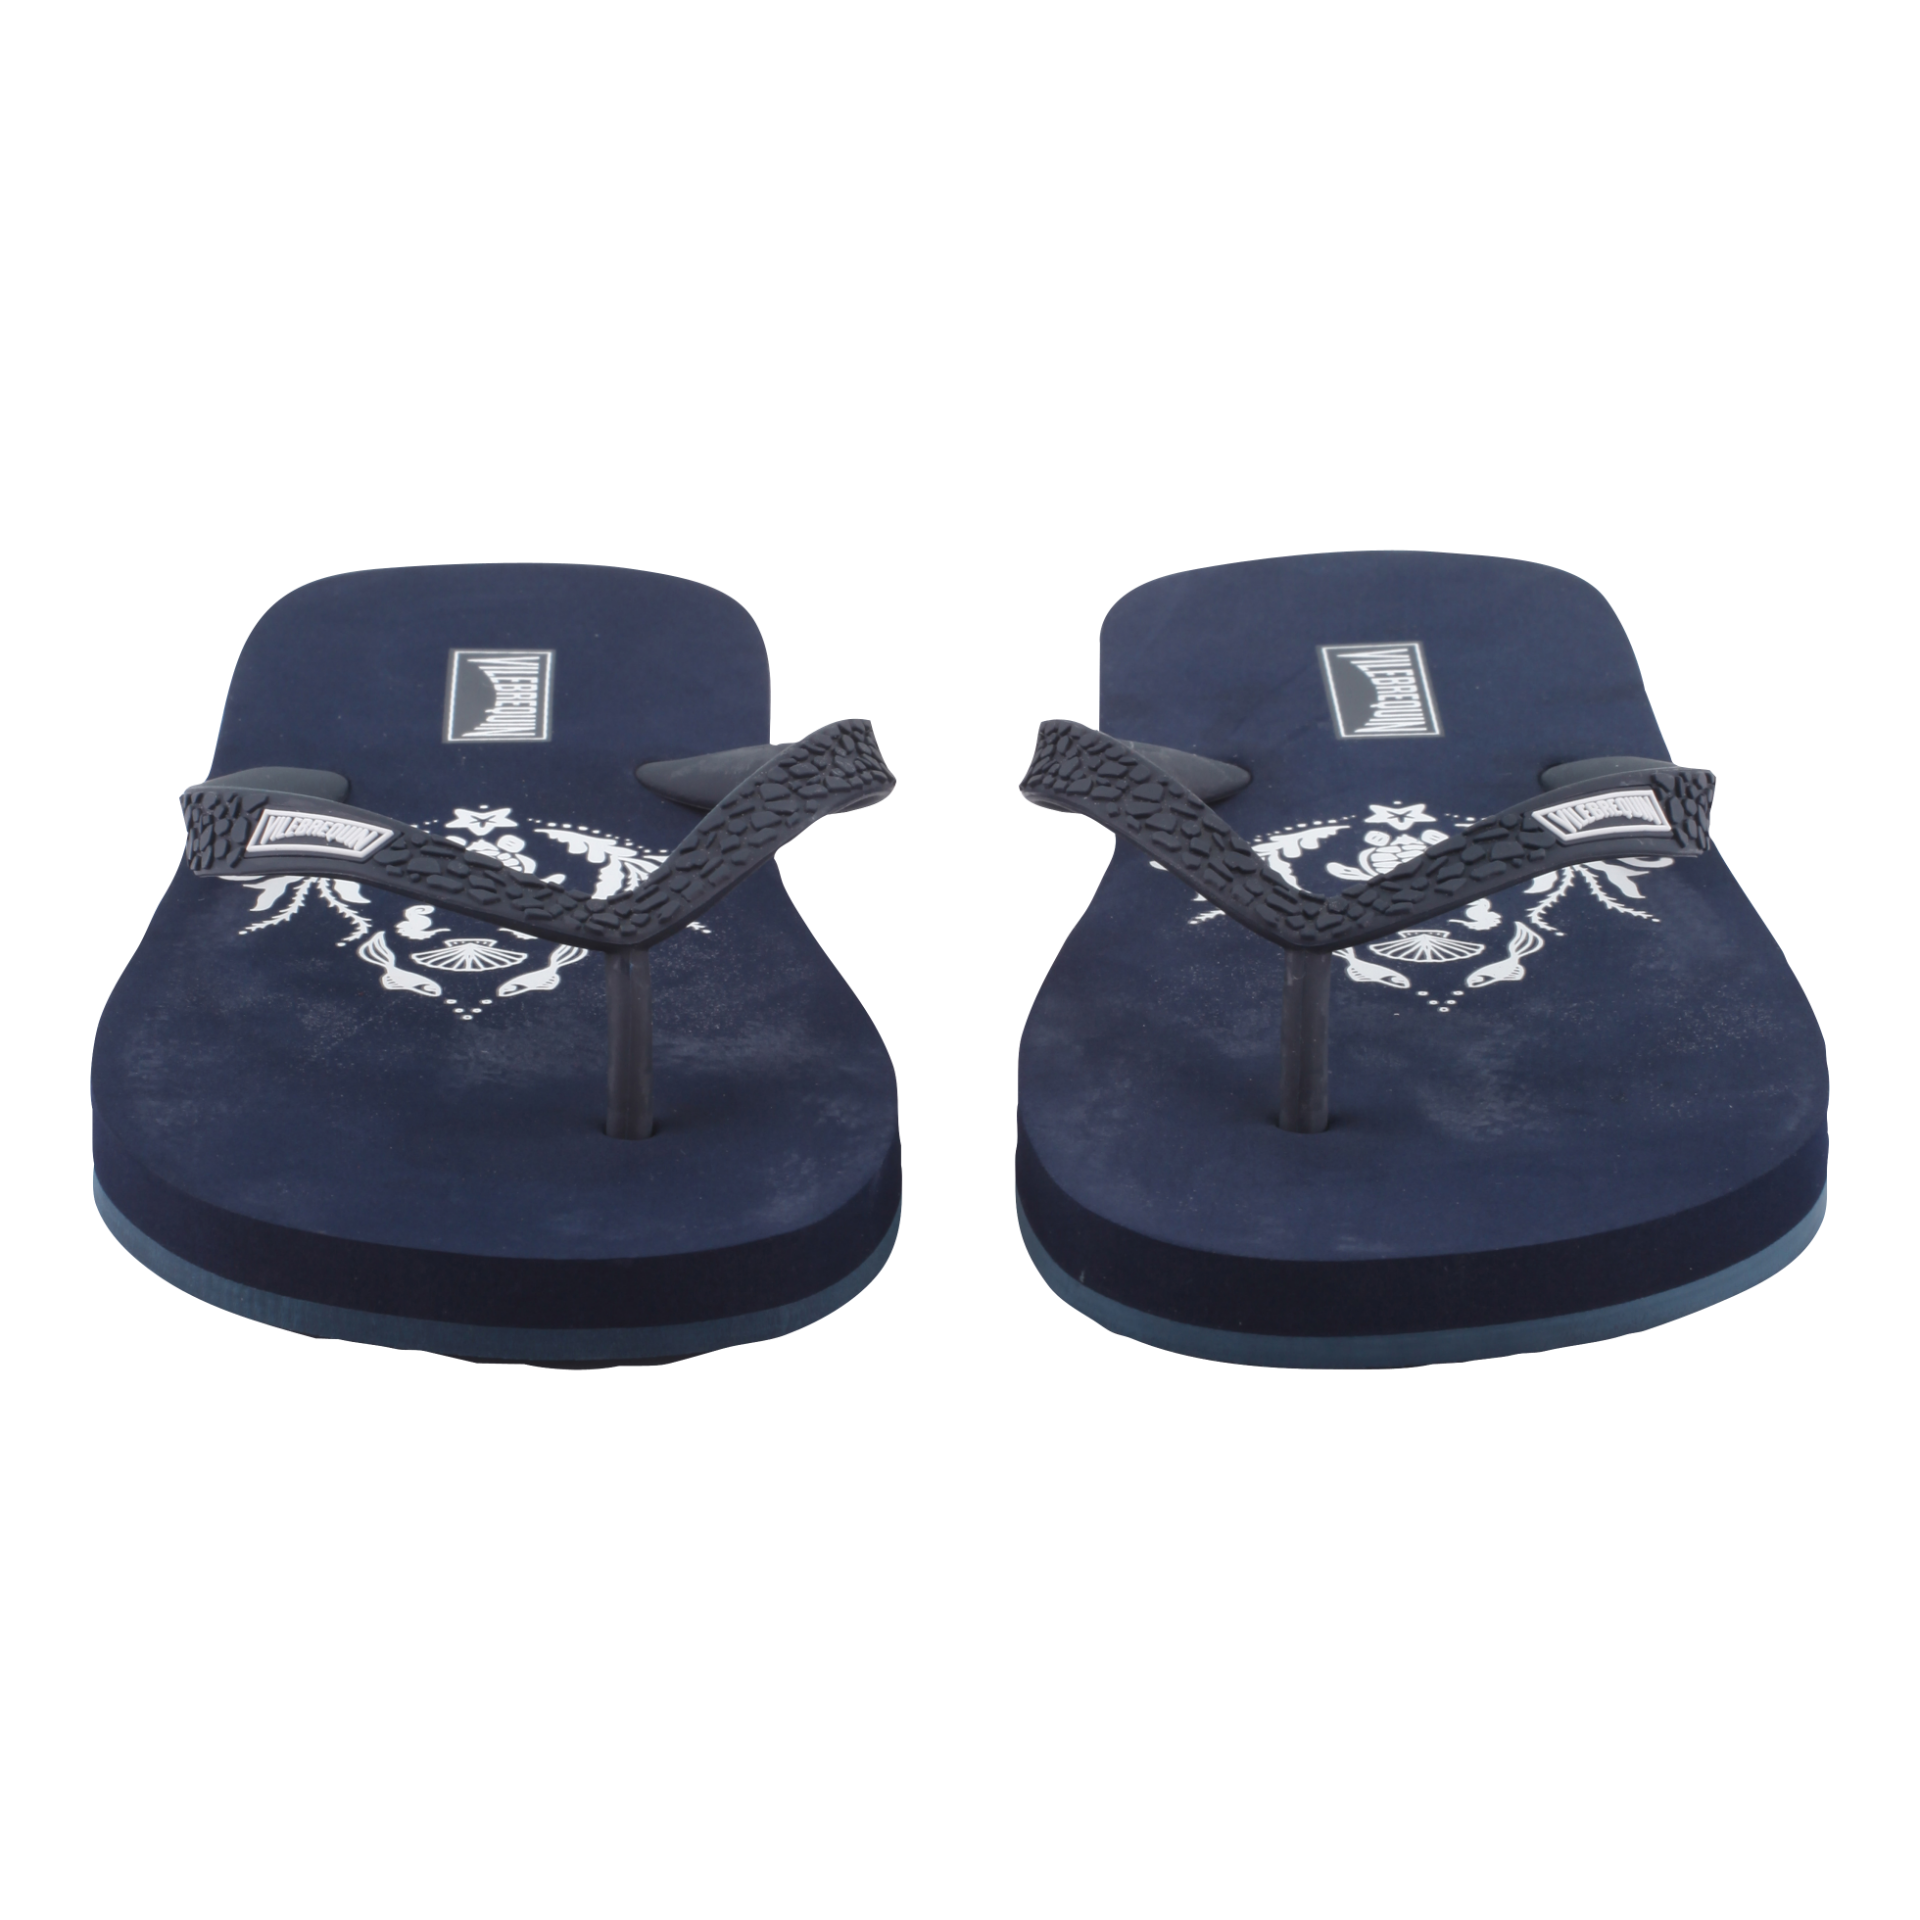 VILEBREQUIN Flip Flops Navy - Authentic & New - Size 3.5 / 4 - RRP Â£65+ ! - Image 4 of 5